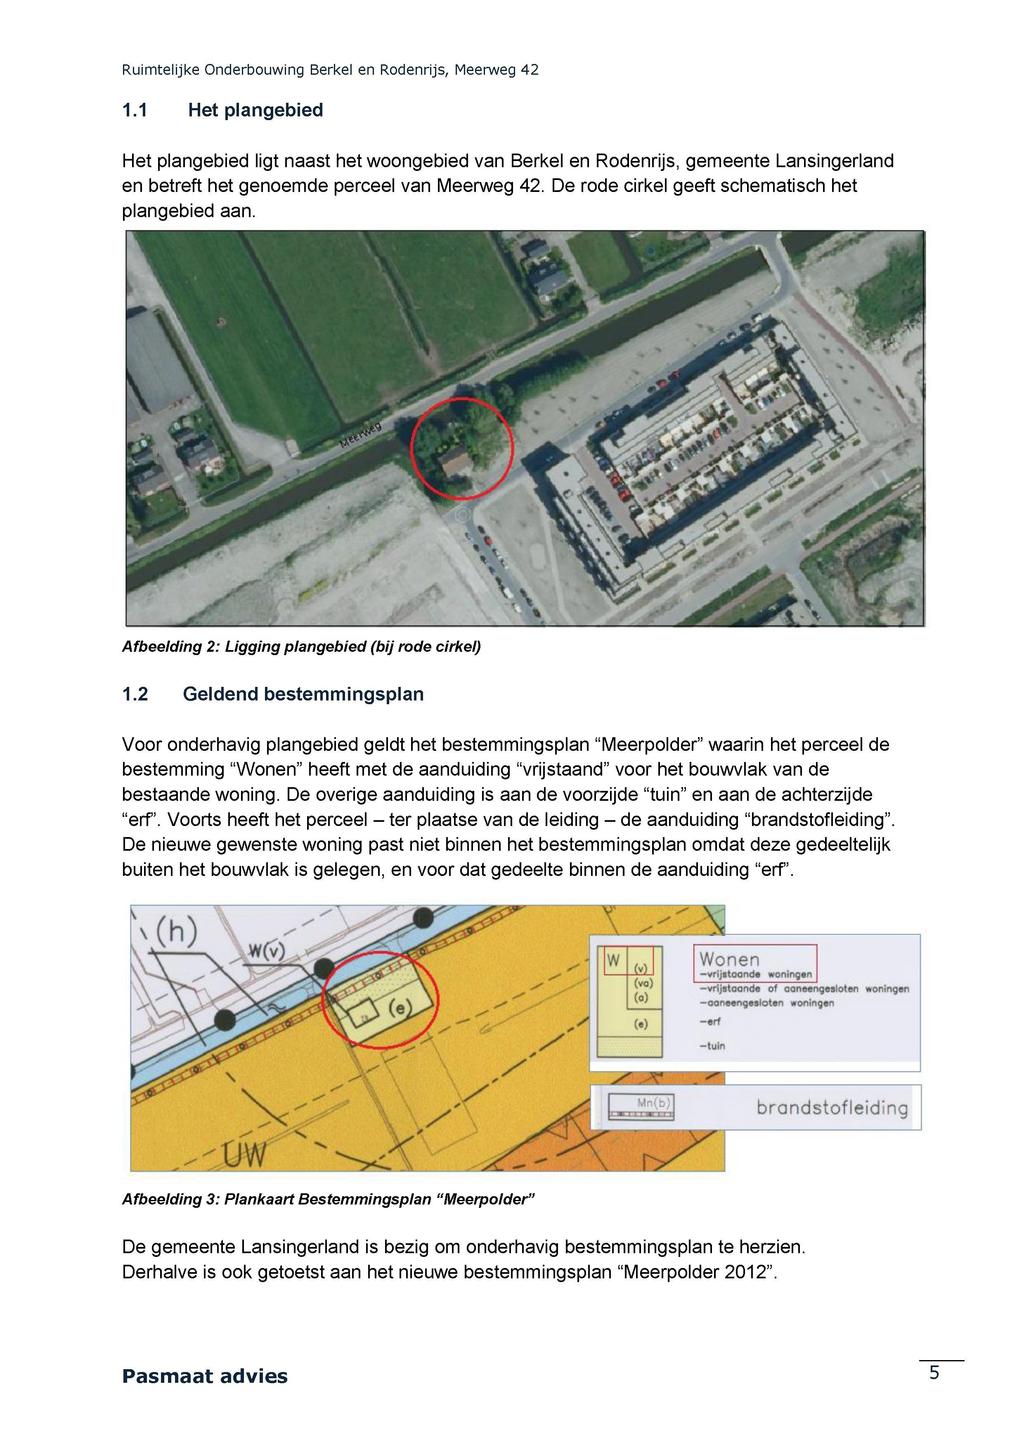 1.1 Het plangebied Het plangebied ligt naast het woongebied van Berkel en Rodenrijs, gemeente Lansingerland en betreft het genoemde perceel van Meerweg 42.